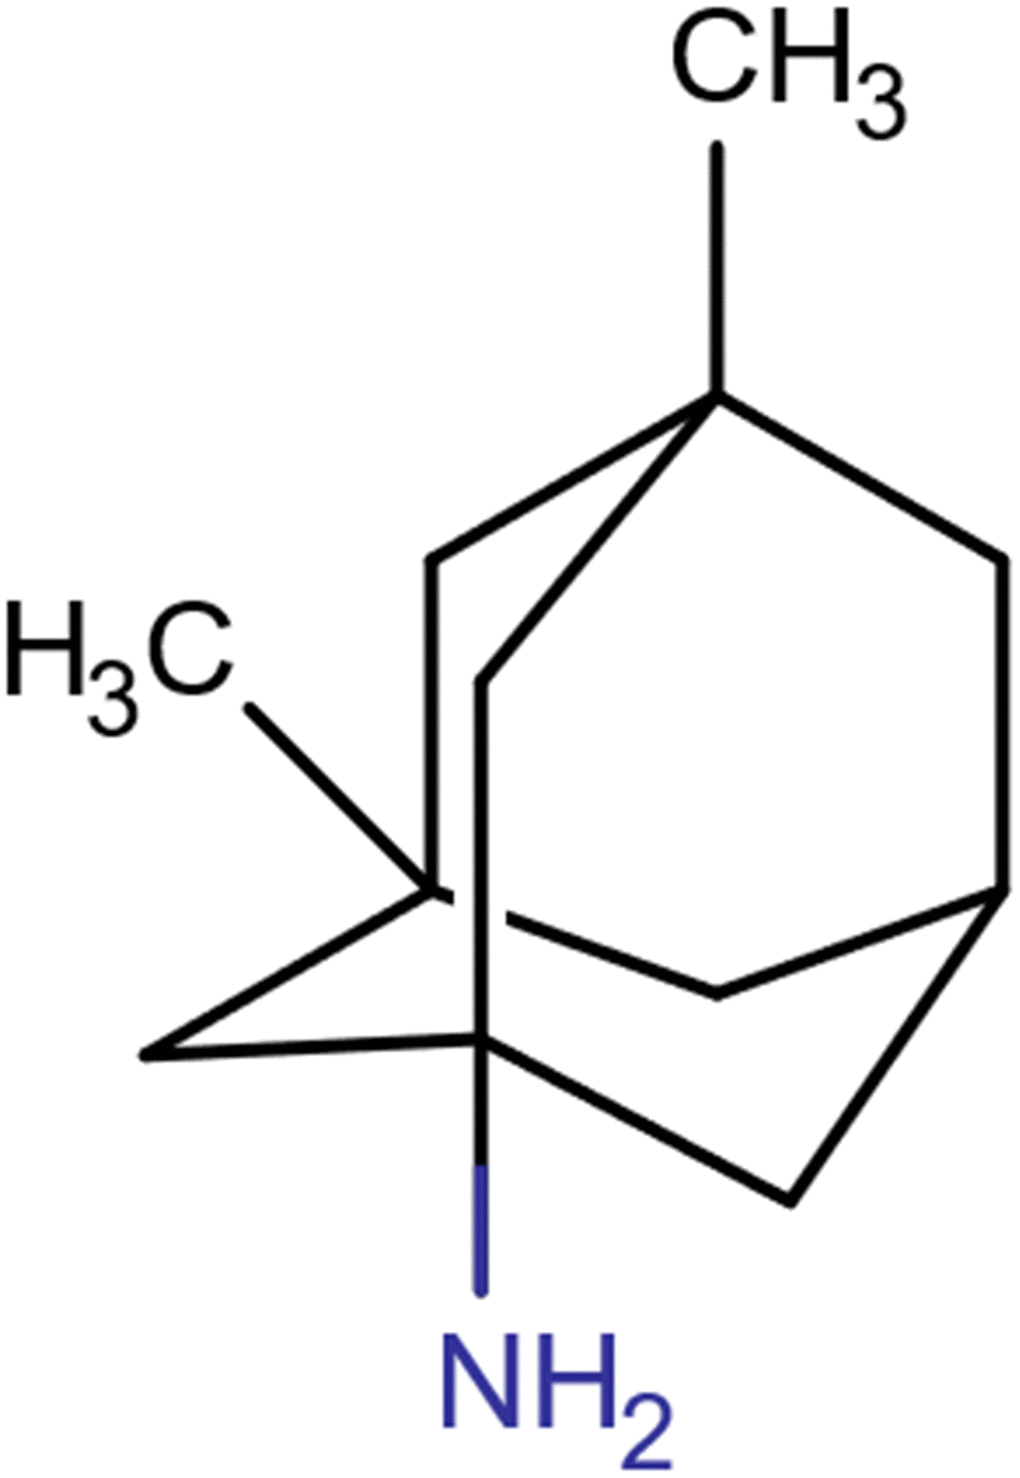 Molecular structure of memantine.